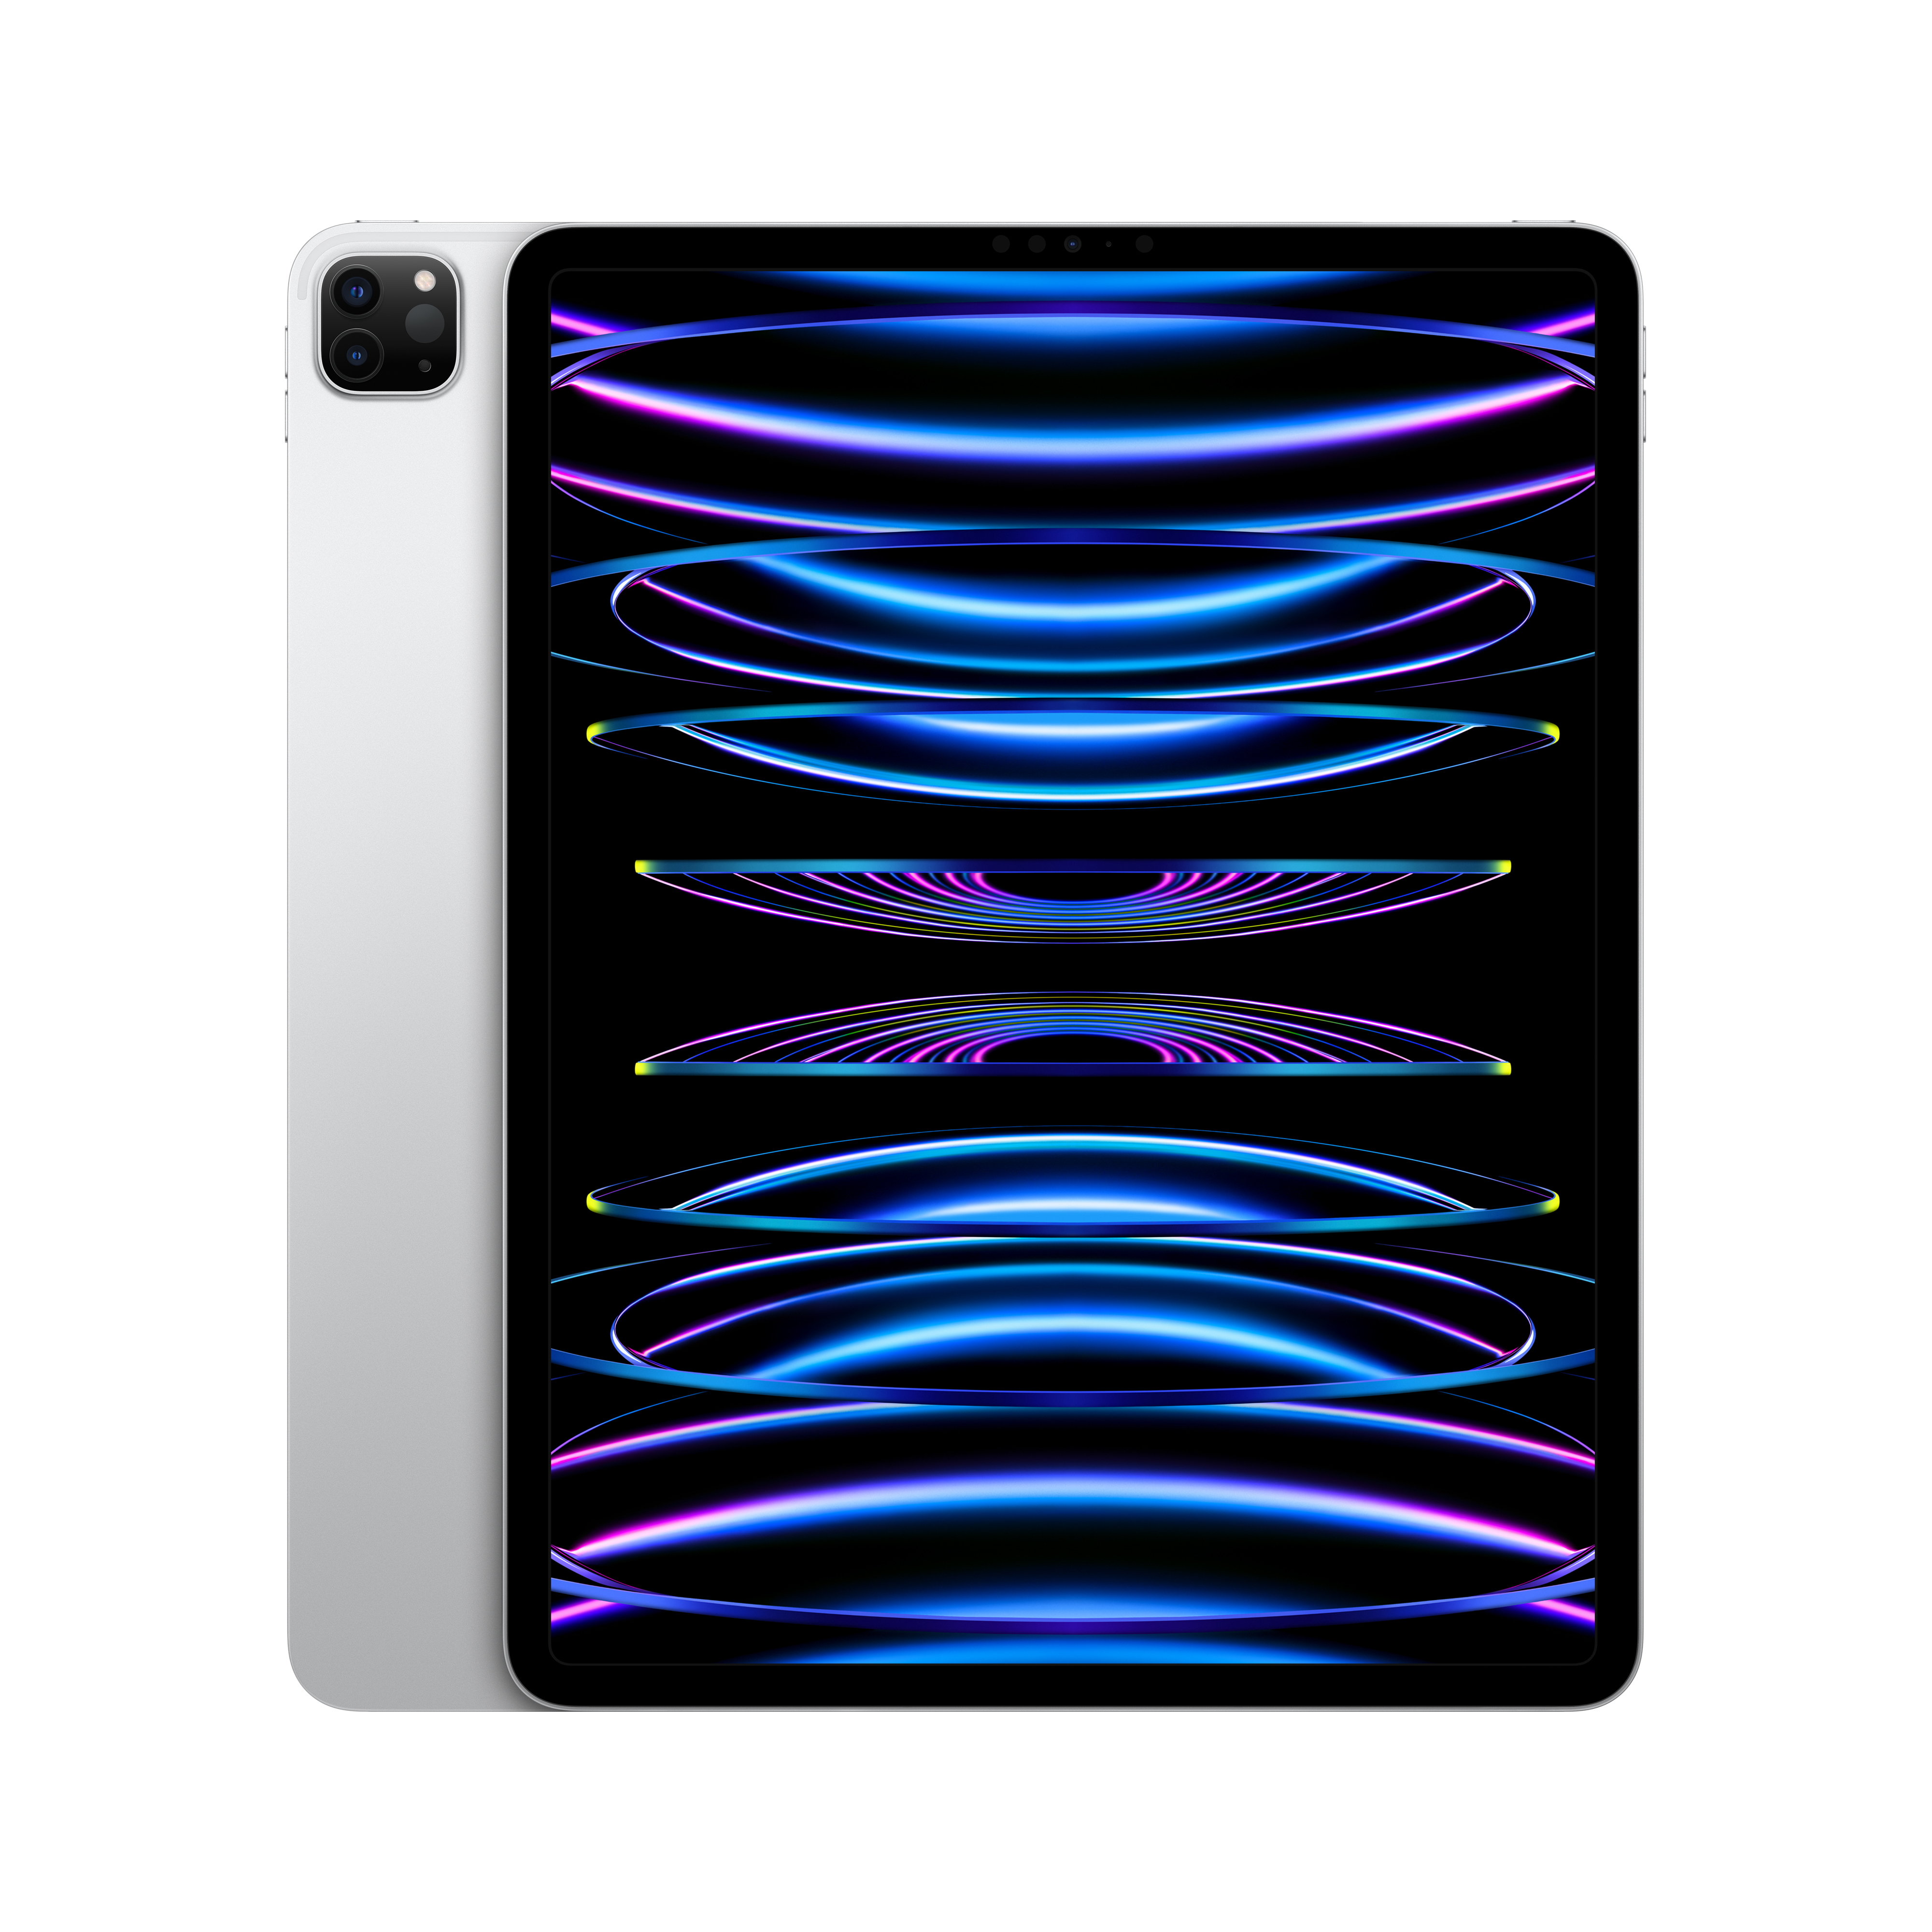 iPad Pro 12.9 (32,77cm) 128GB WIFI silber iOS